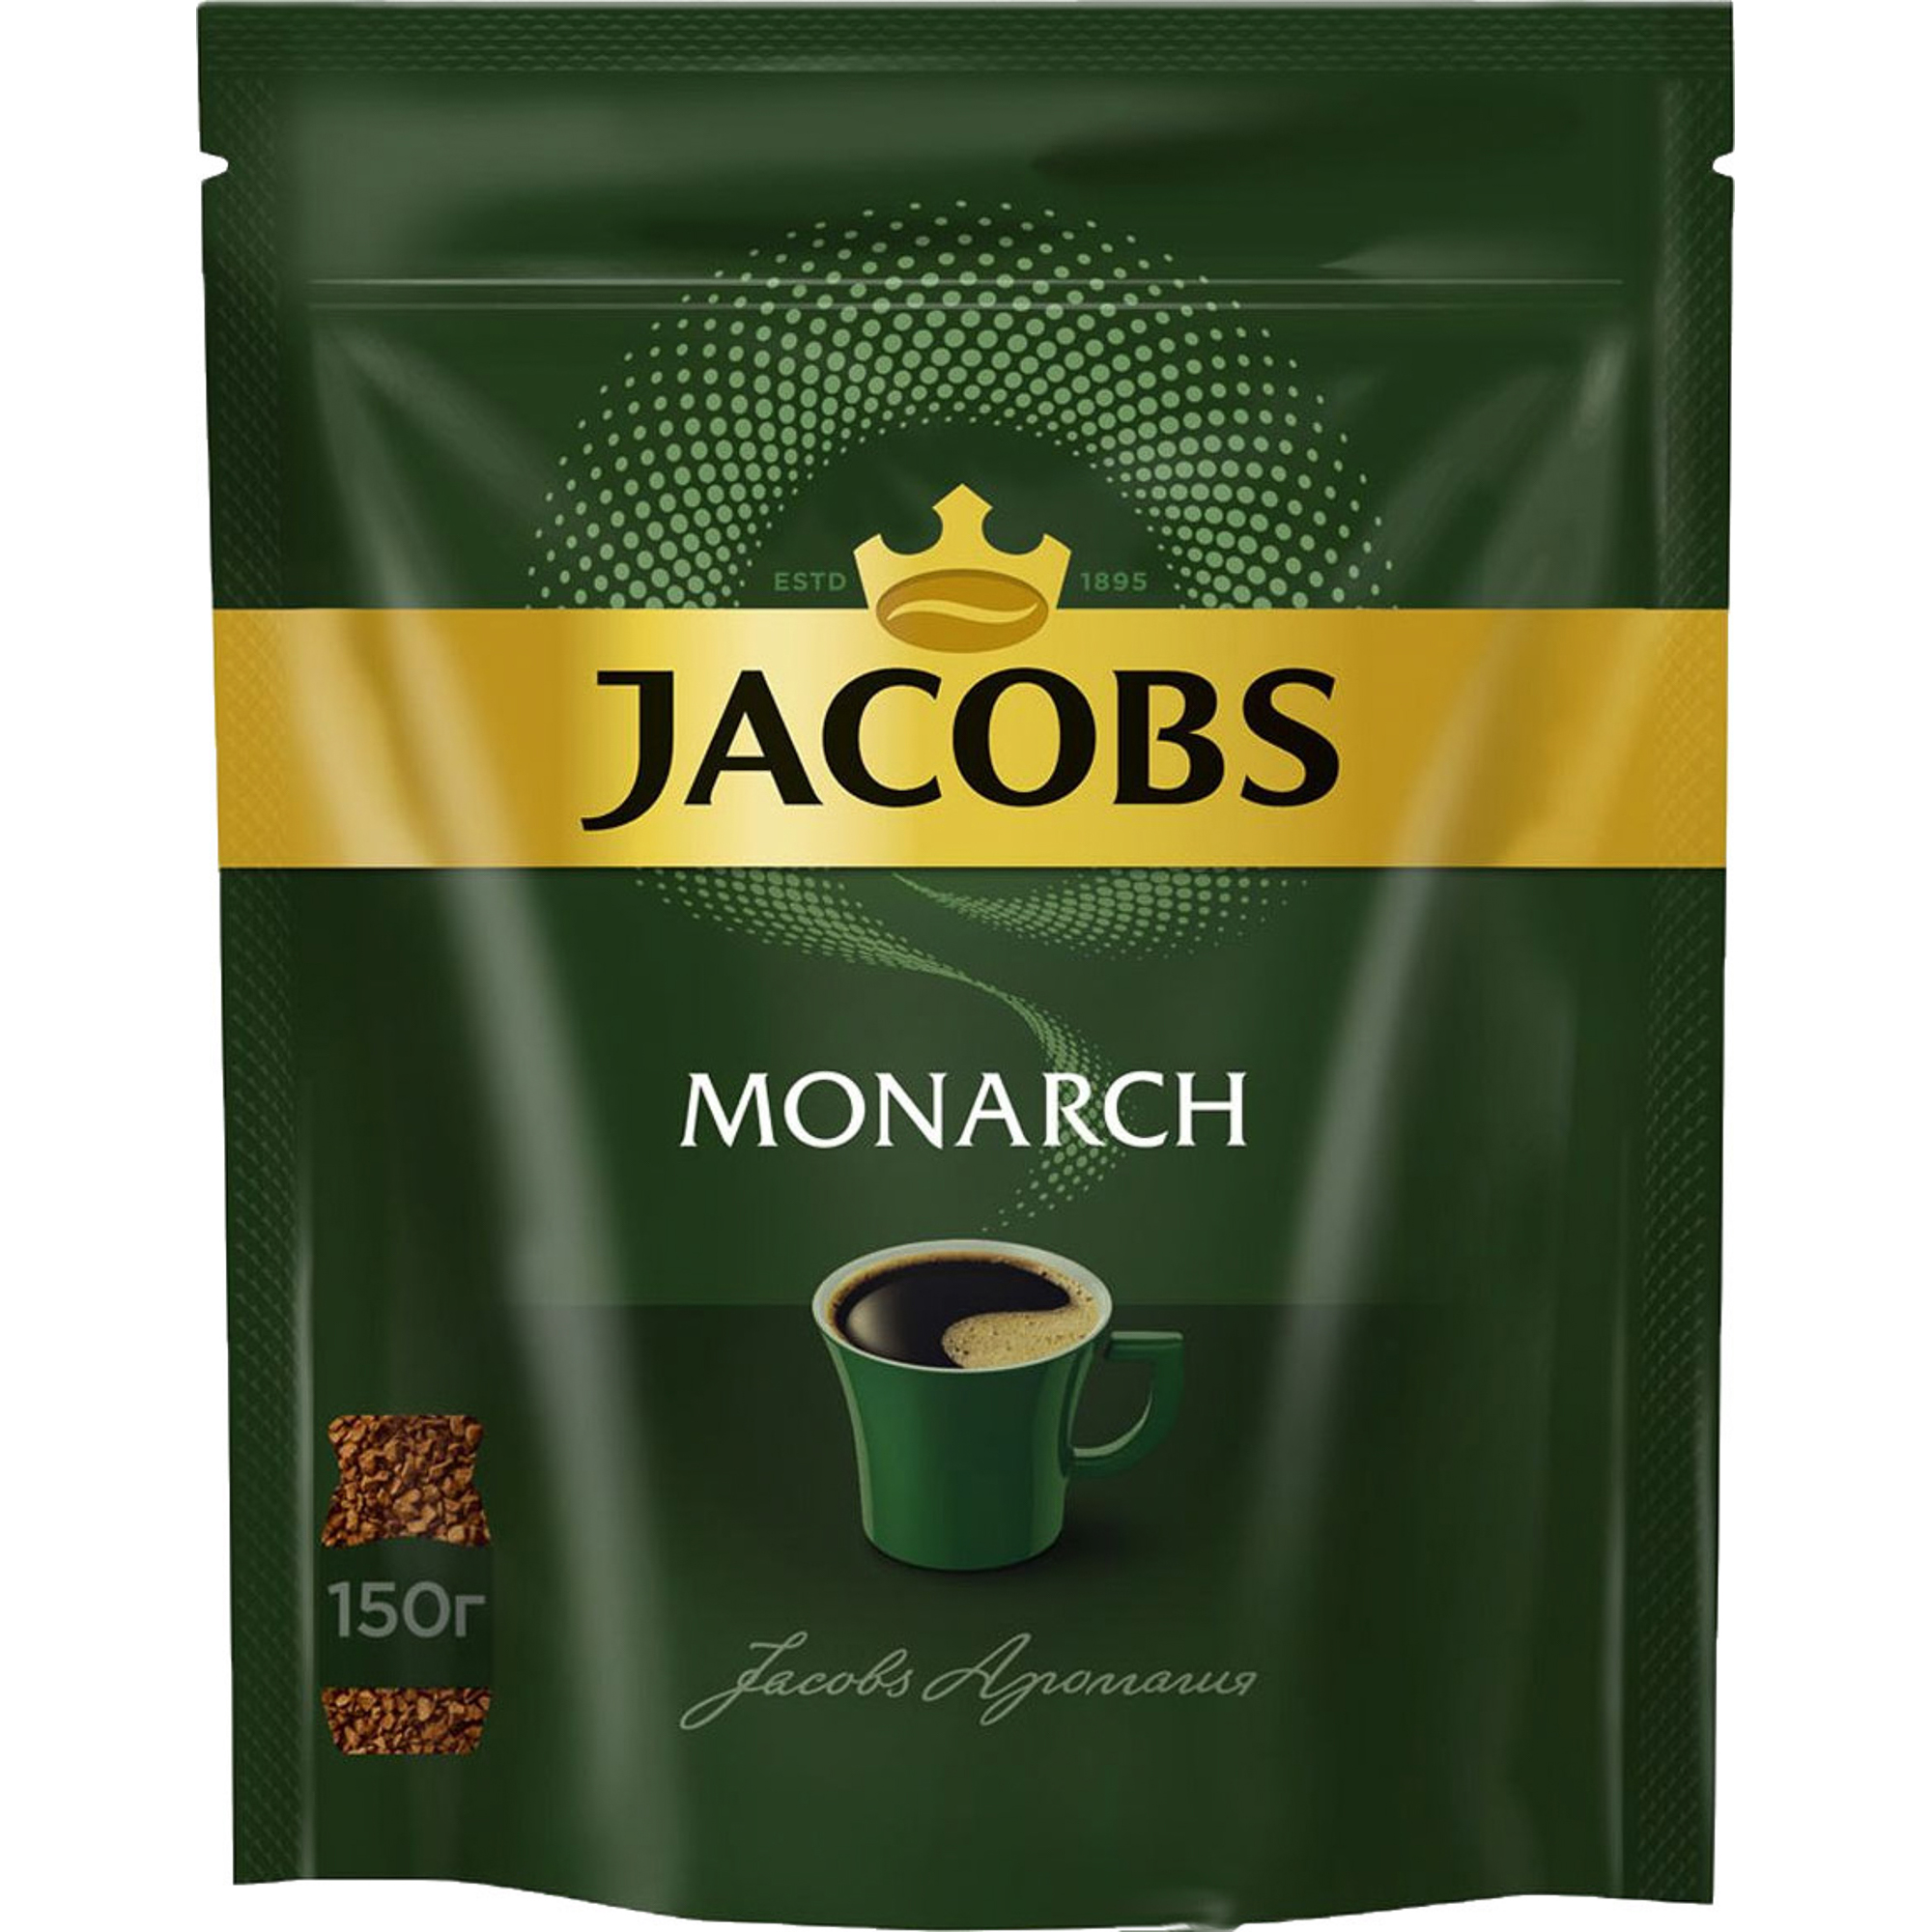 Кофе Jacobs Monarch, растворимый, 240 г